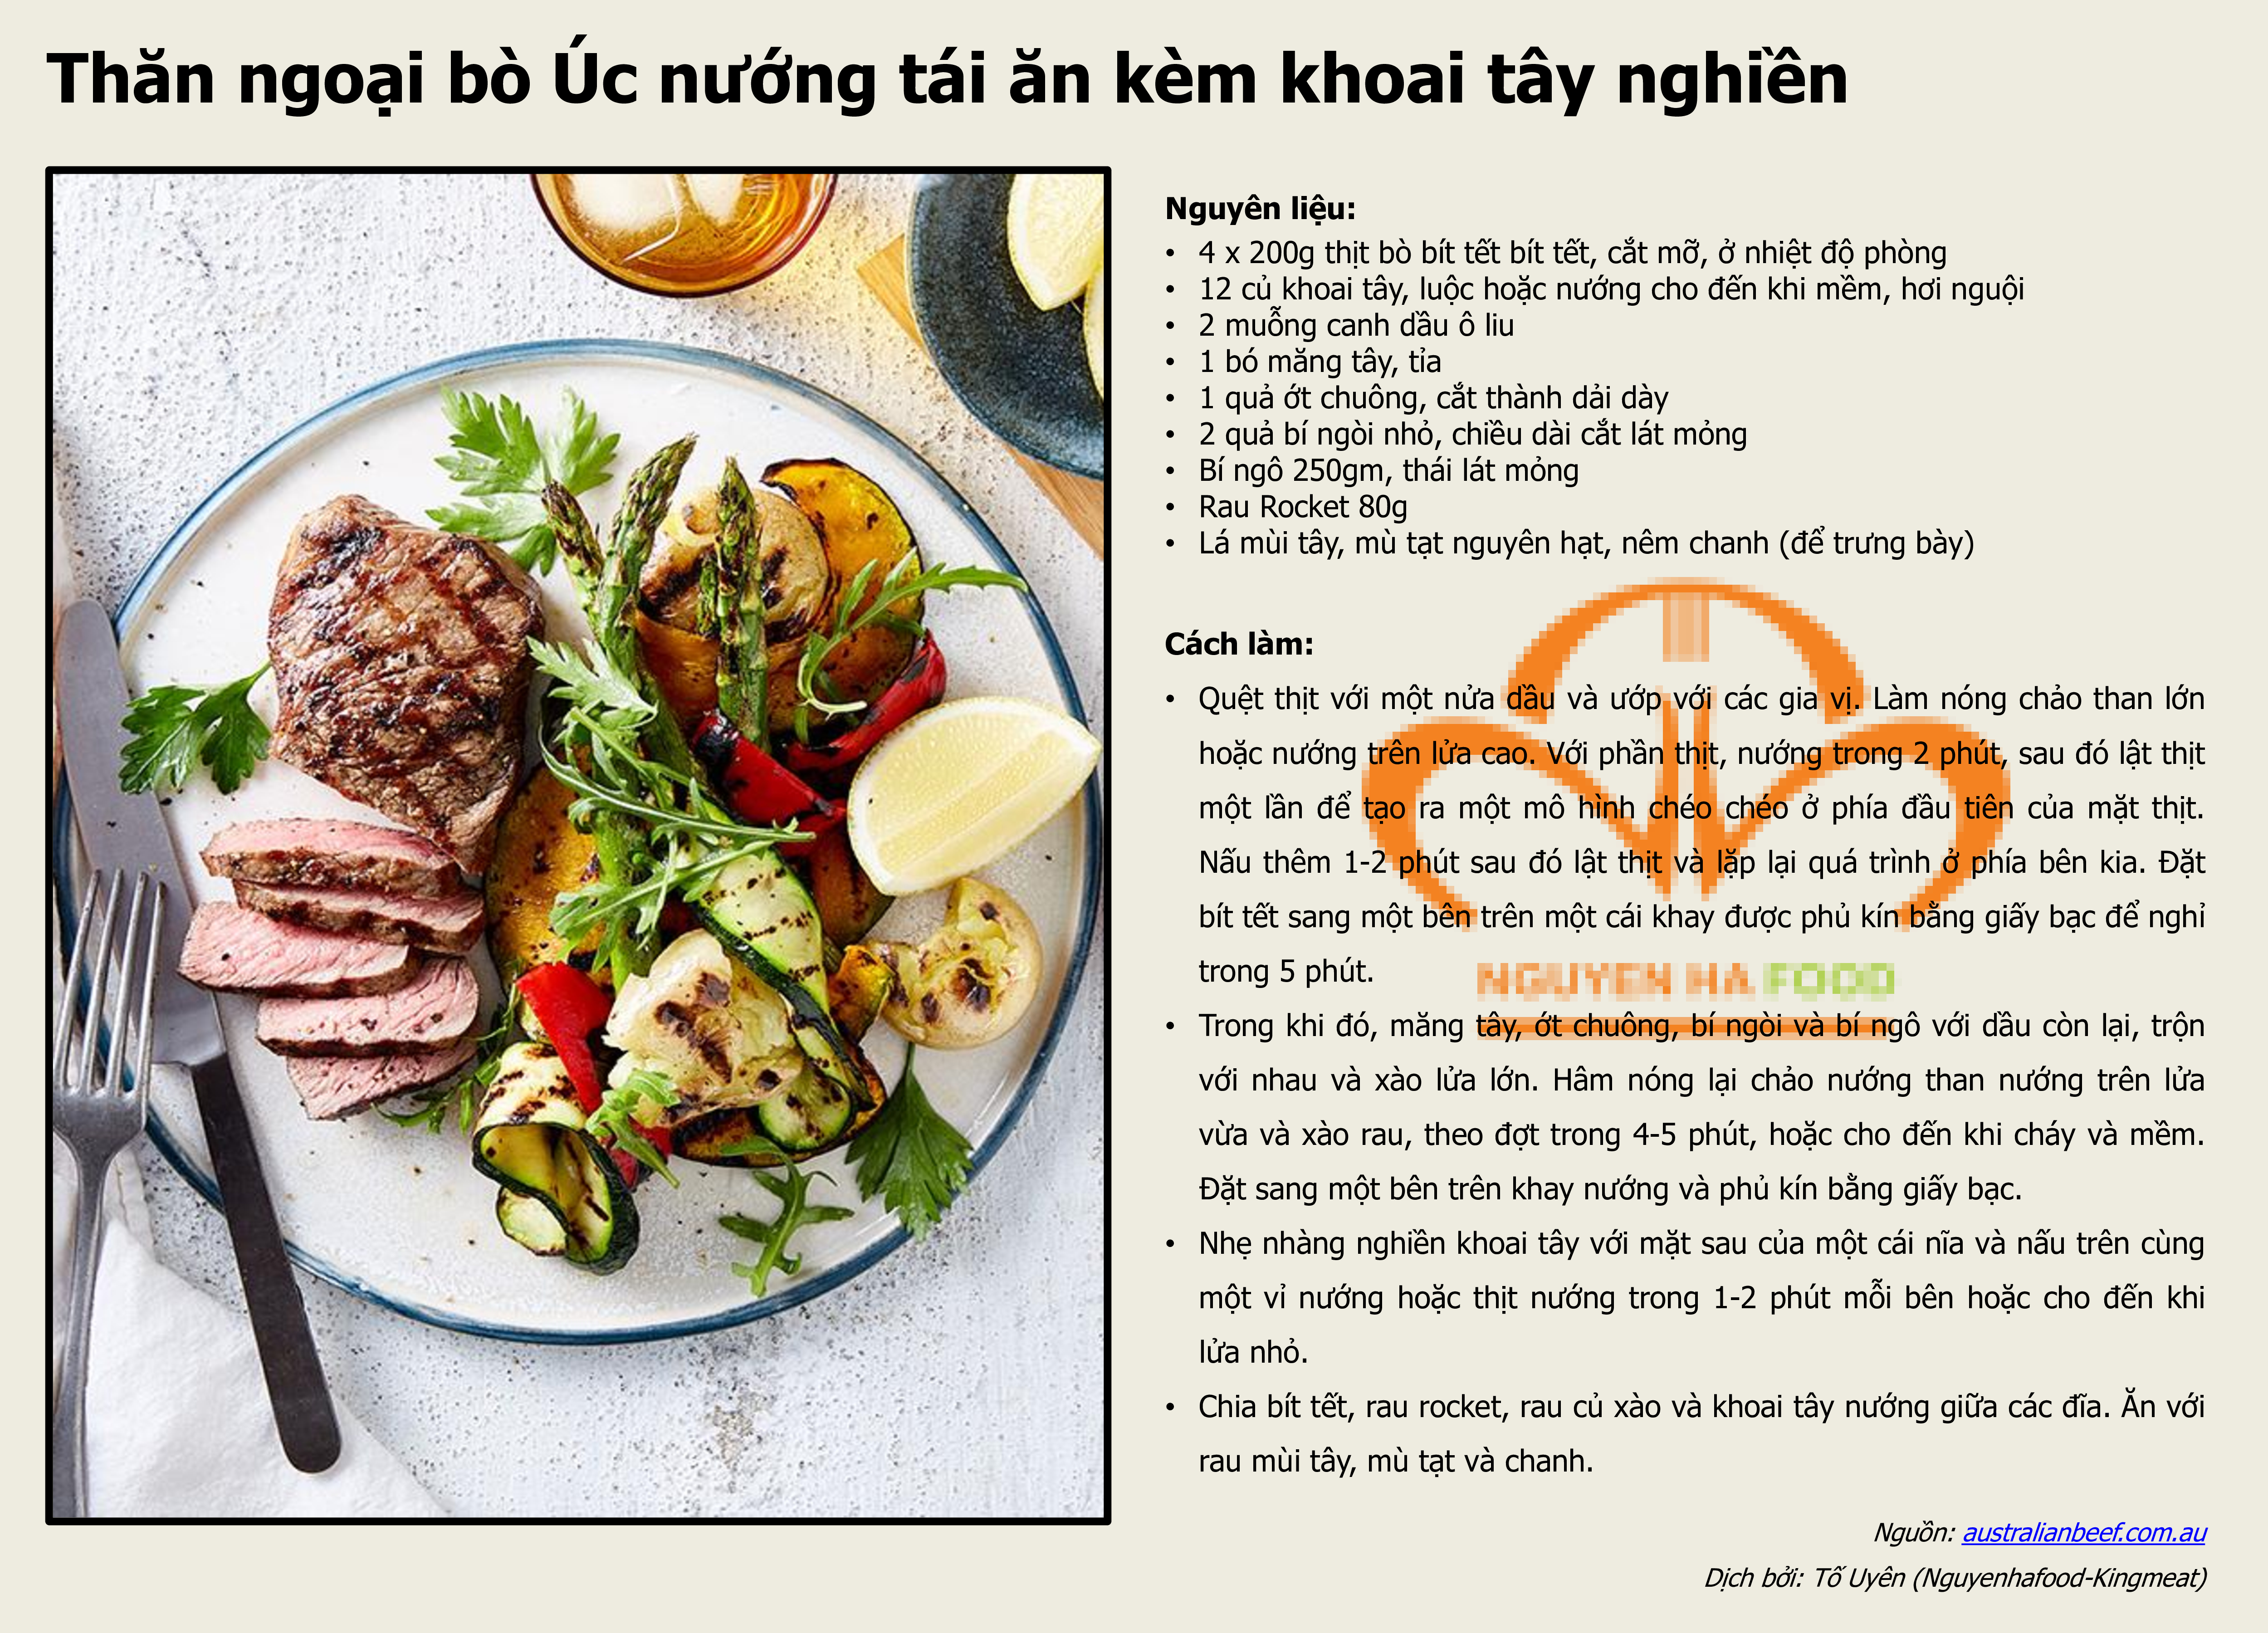 bo-uc-nuong-an-kem-khoai-tay-nghien-nguyenh-ha-food